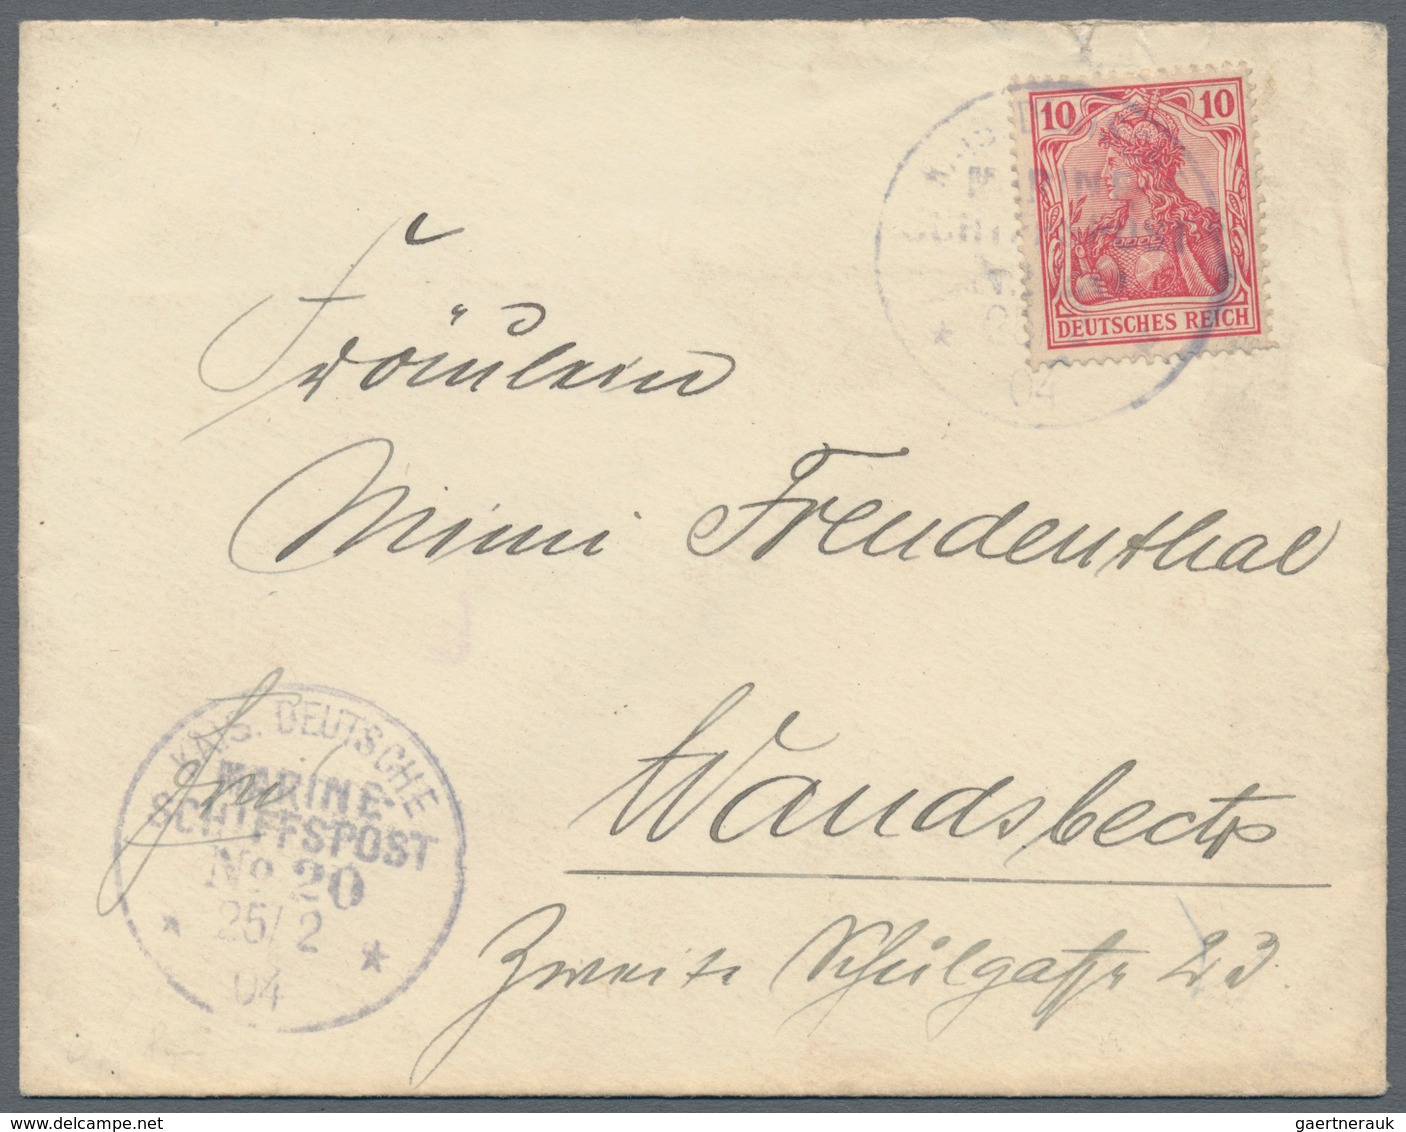 Deutsche Post in China - Besonderheiten: 1896/1912, sechs Belege (u.a. japan. Schmuckbrief aus 1895,